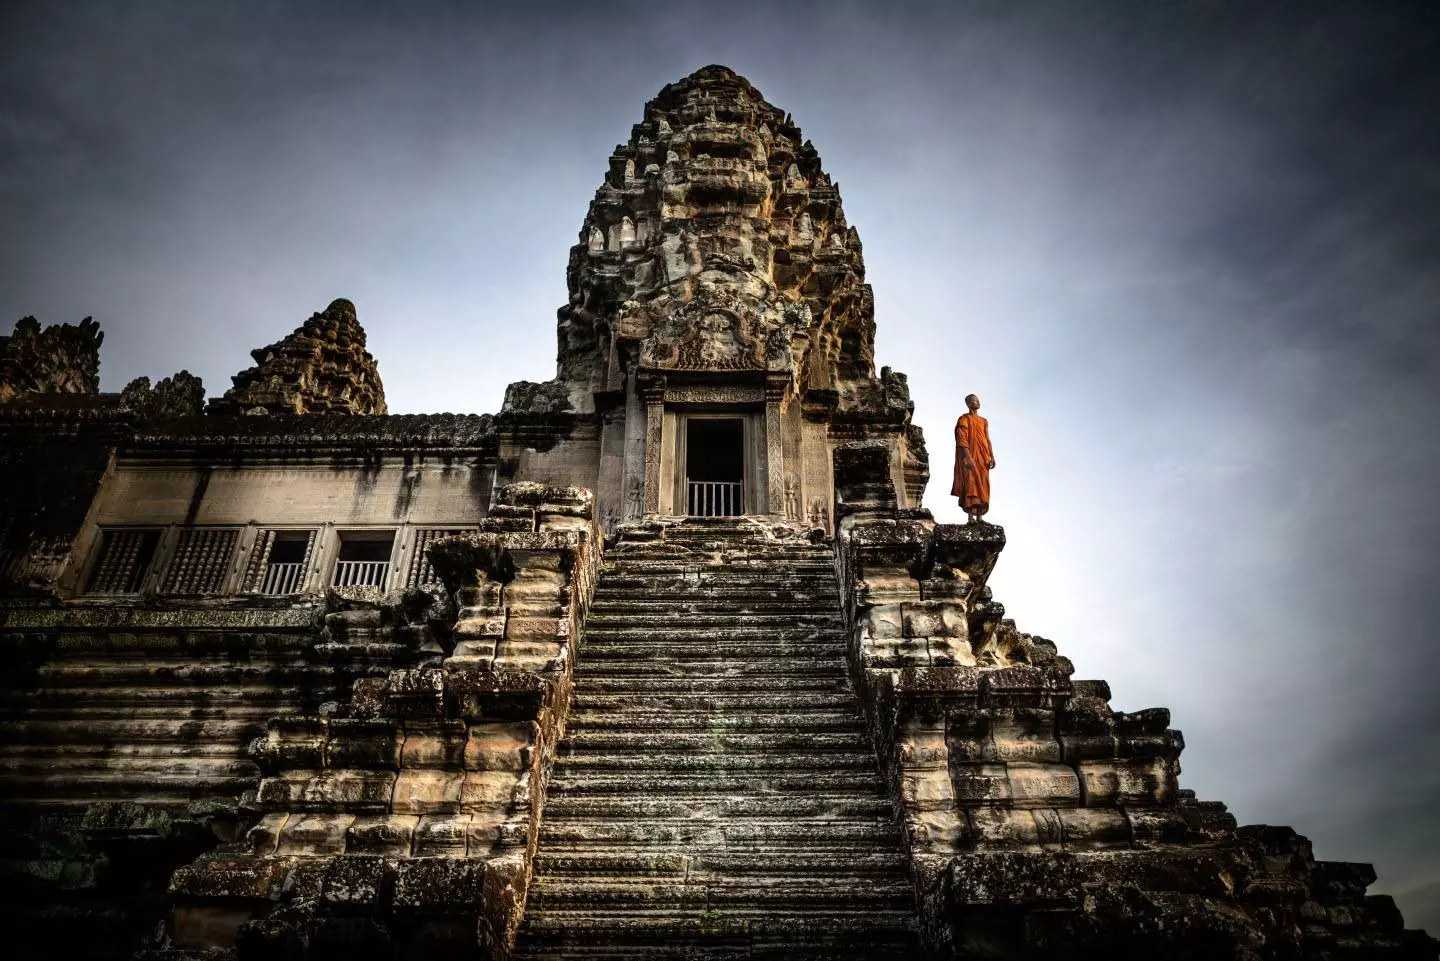 Monje en el templo de Angkor Wat, templos de Angkor, Siem Reap, Camboya